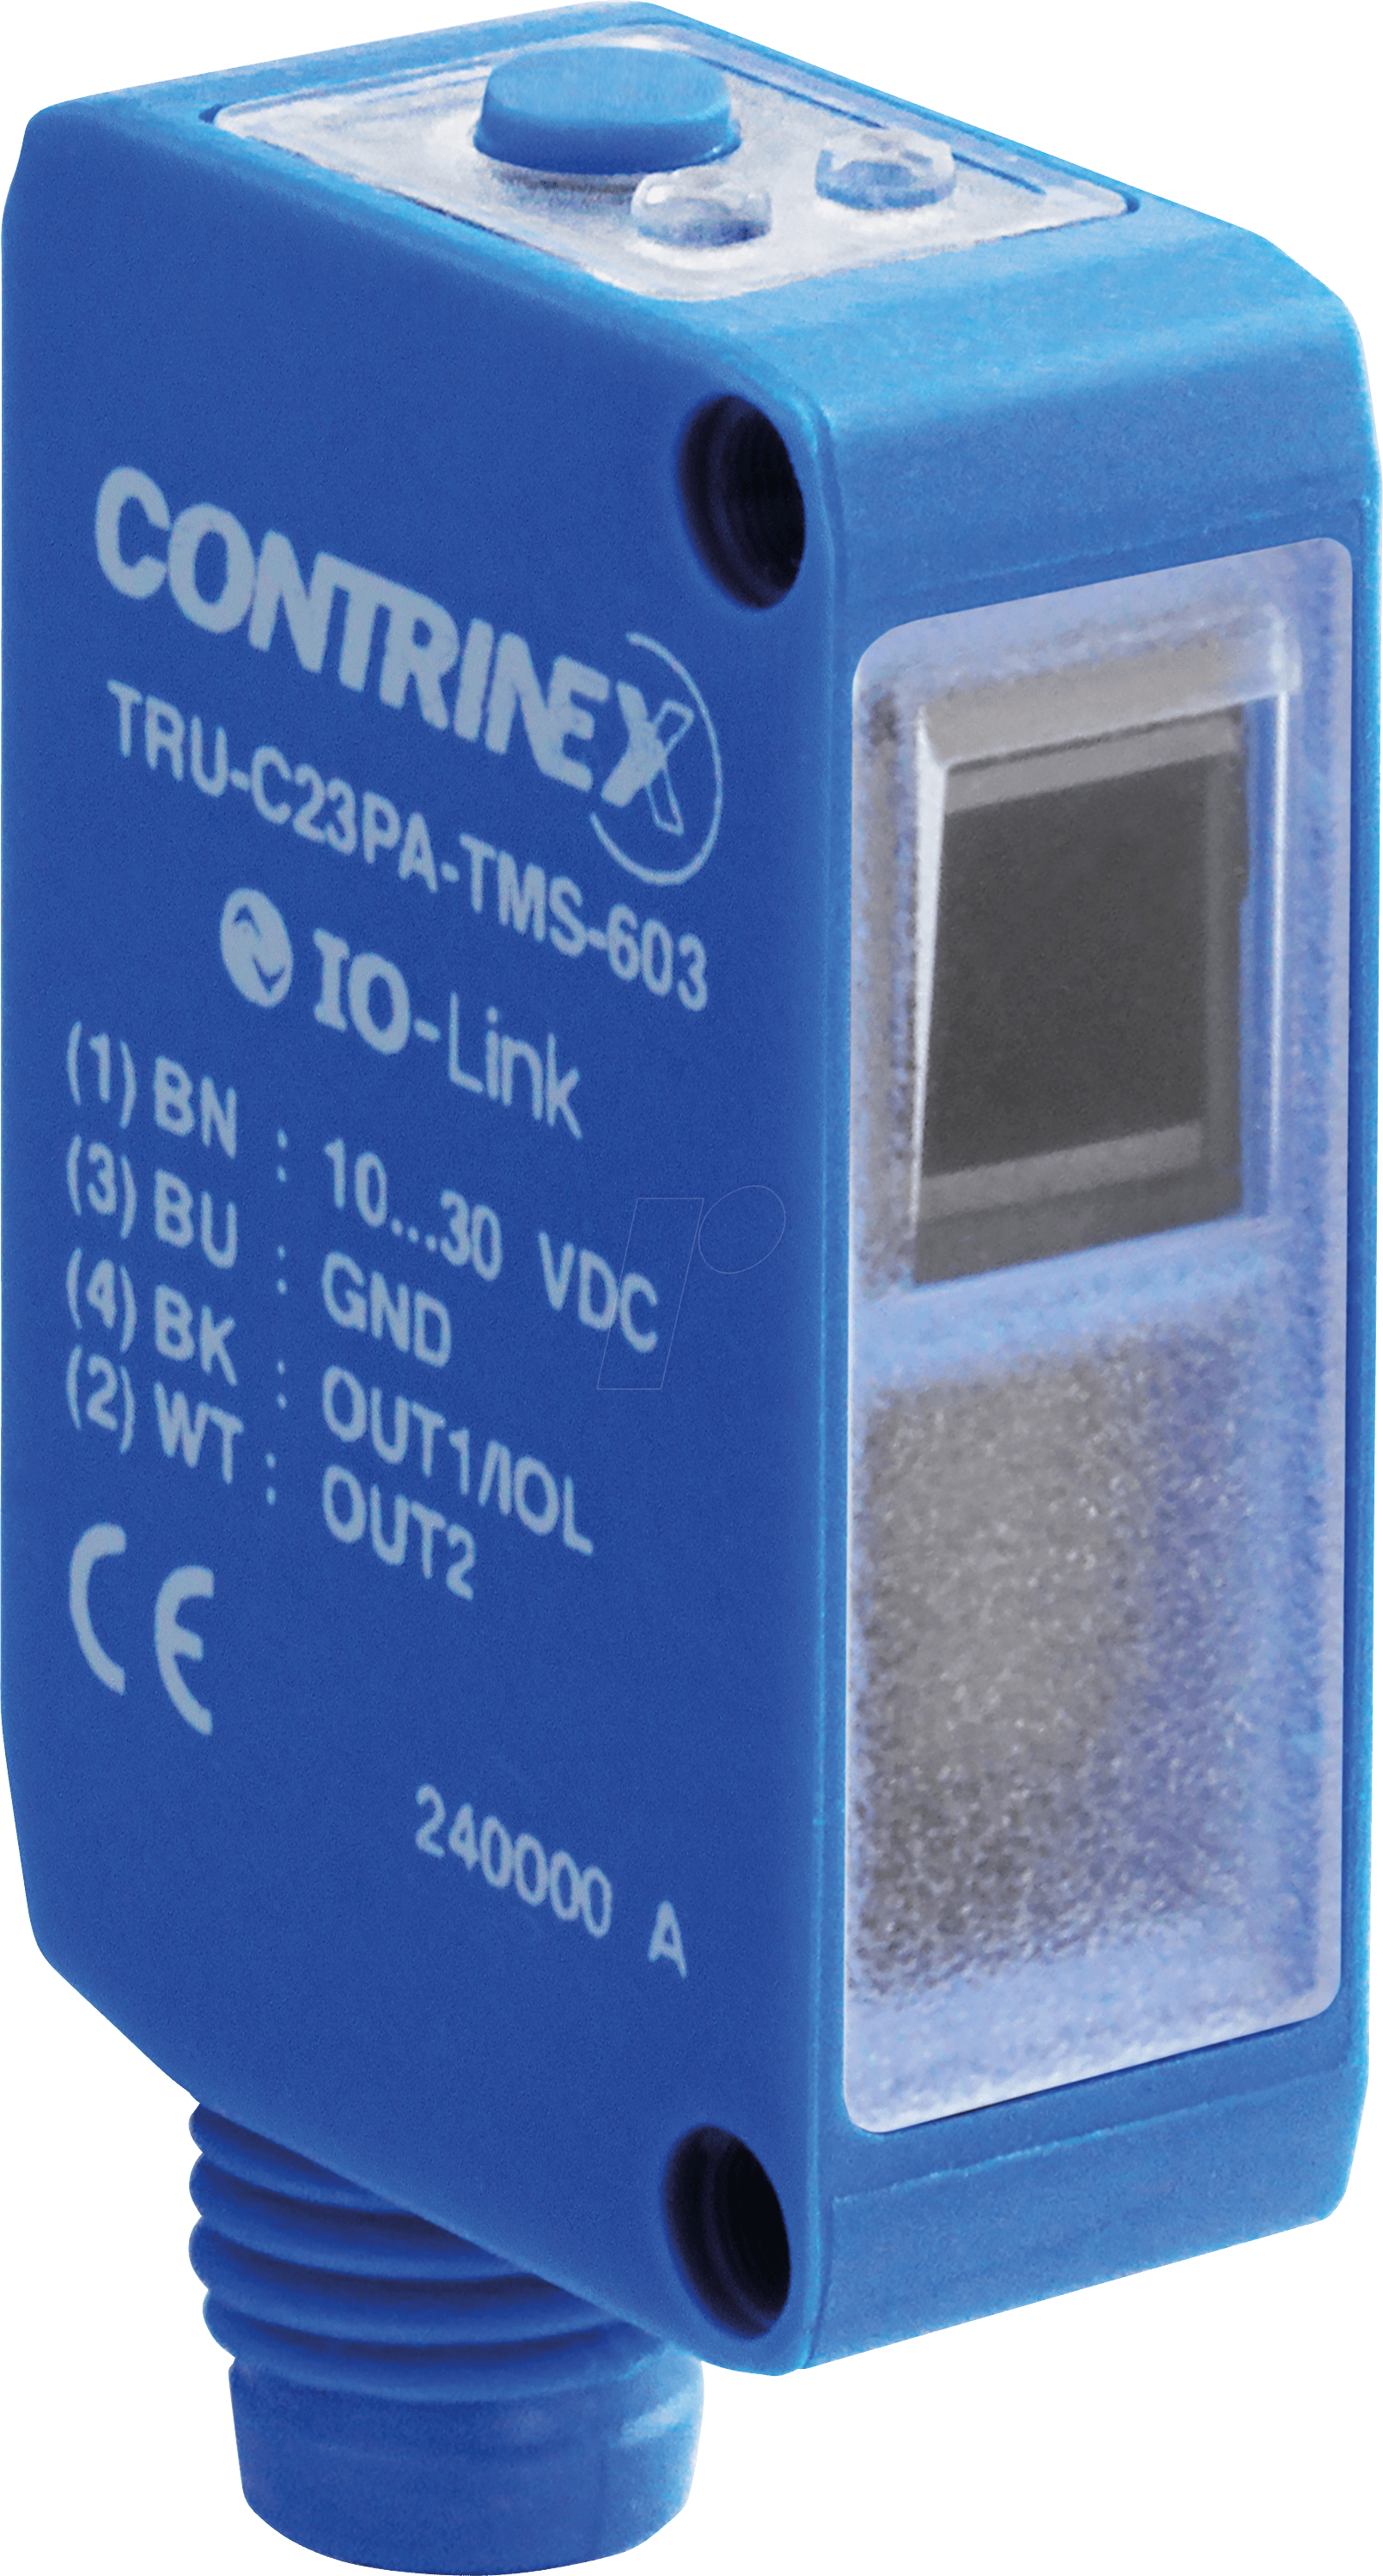 TRU C23PA TMS603 - UV-Reflexlichttaster, C23 Bauform bis 1200mm Reichweite von Contrinex